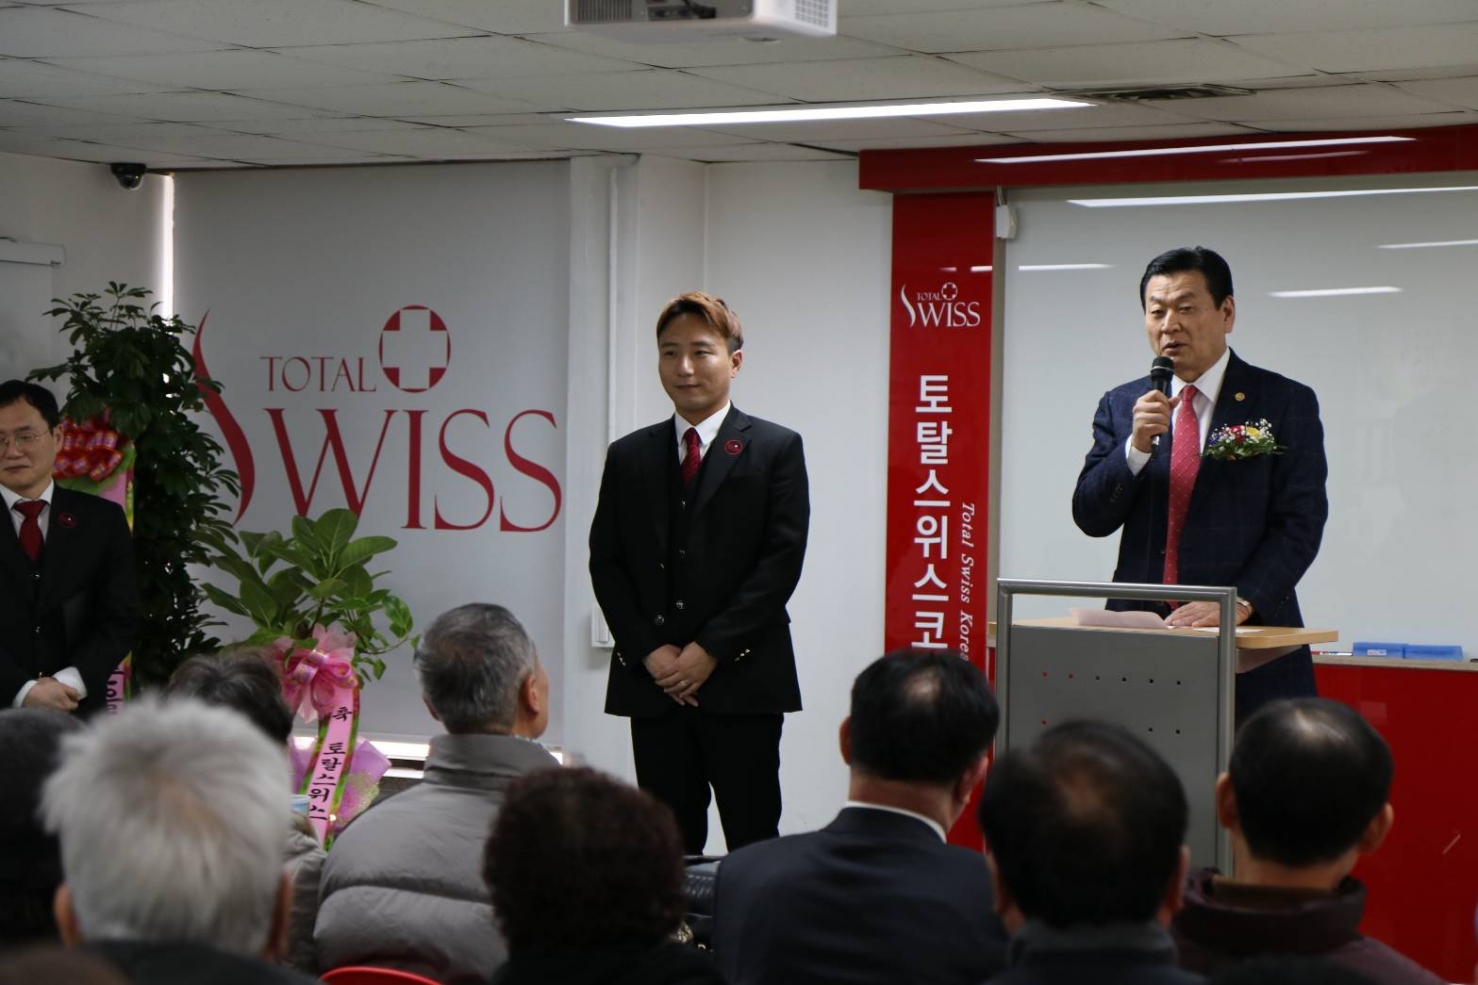 Total Swiss 八馬公司 韓國全州(Jeonju)分公司開幕